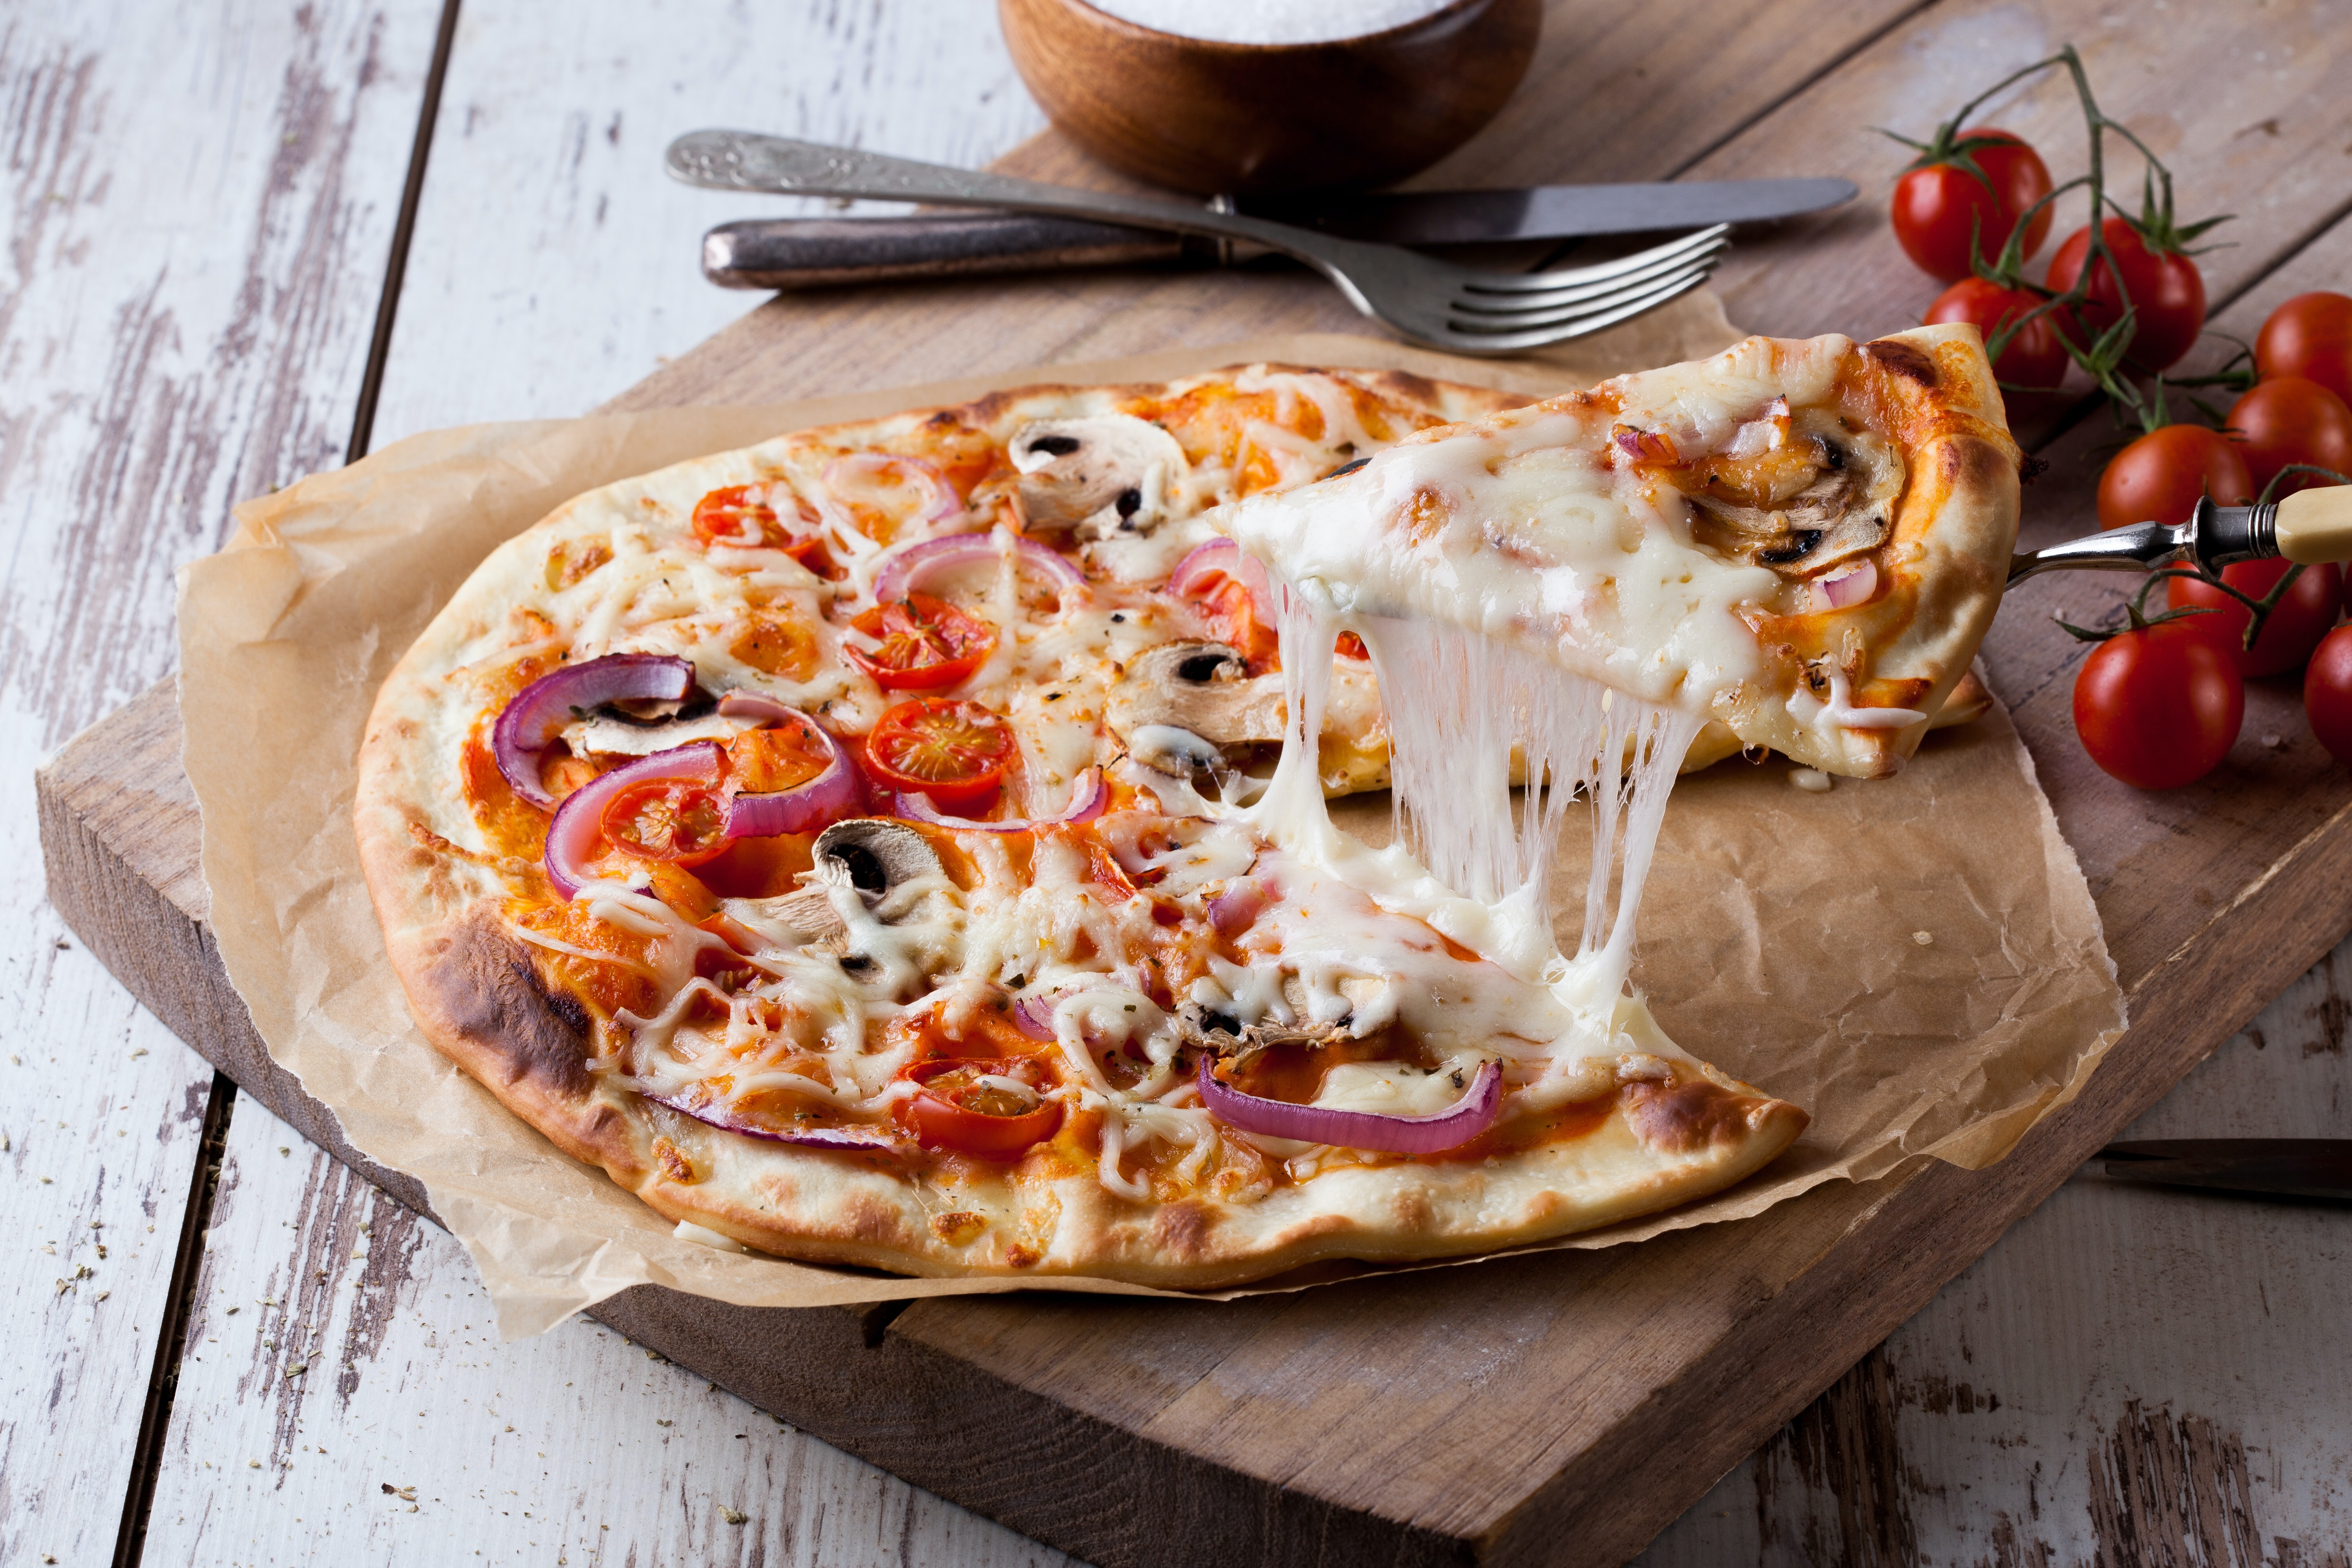 Szybkie ciasto na pizzę - prosty przepis na pizzę jak z włoskiej trattorii  | Ofeminin